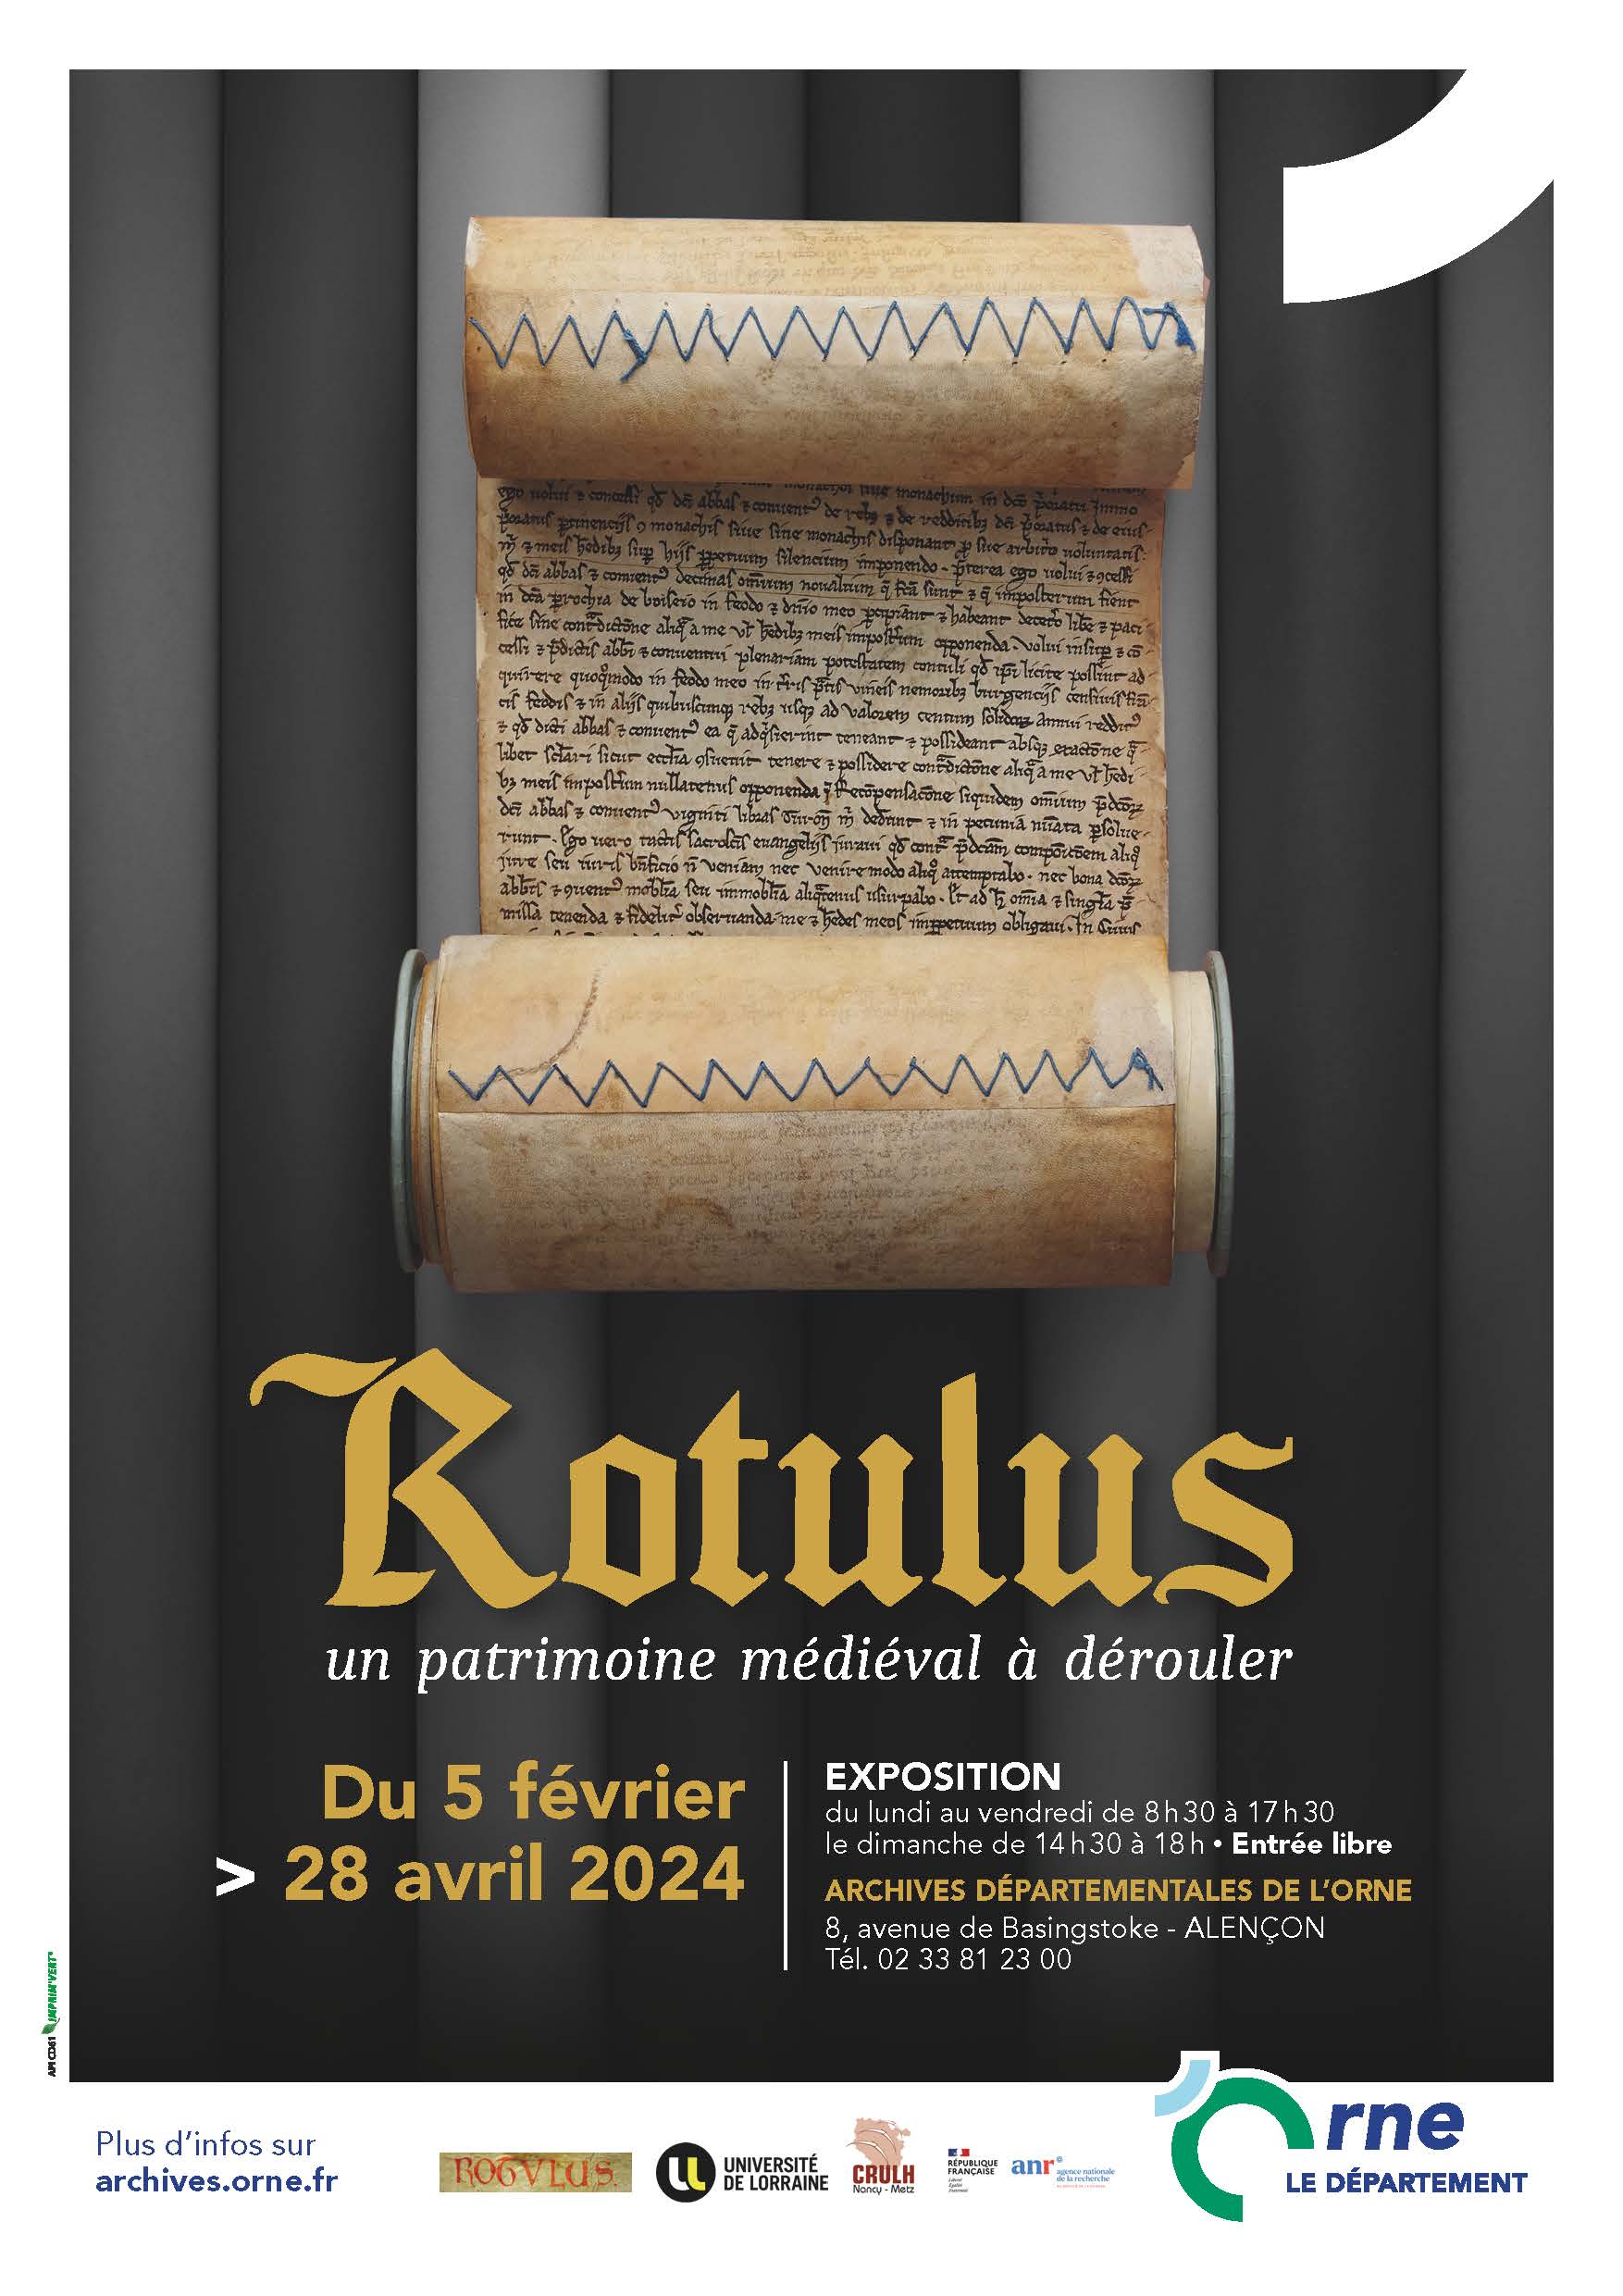 Rotulus, un patrimoine médiéval à dérouler